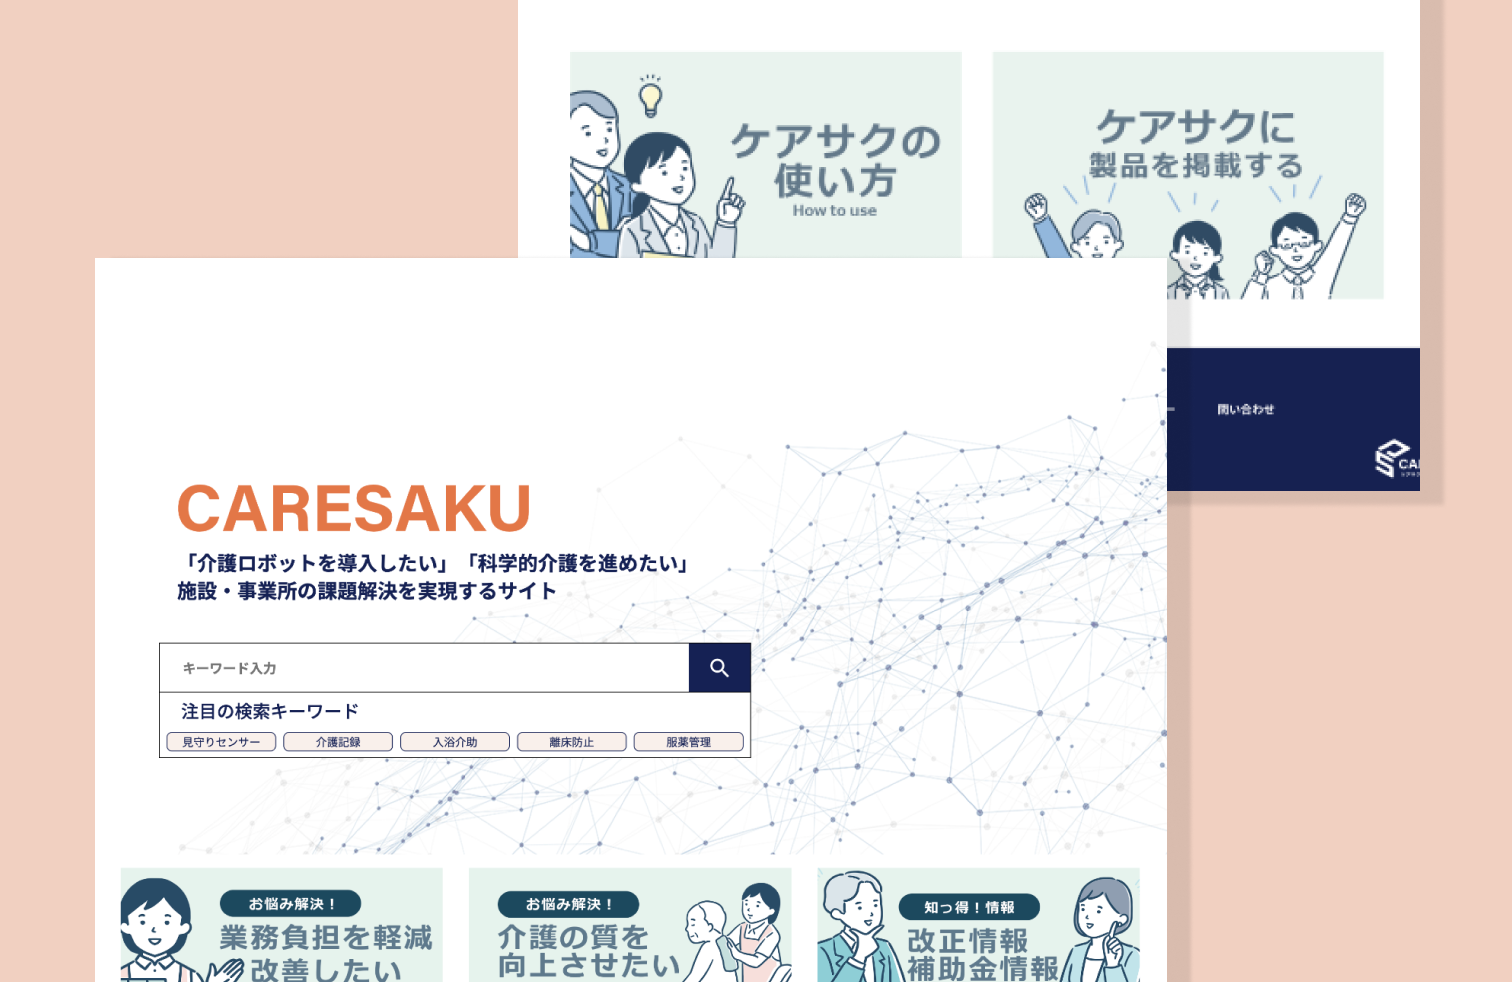 CARESAKU- Healthcare Matching Website